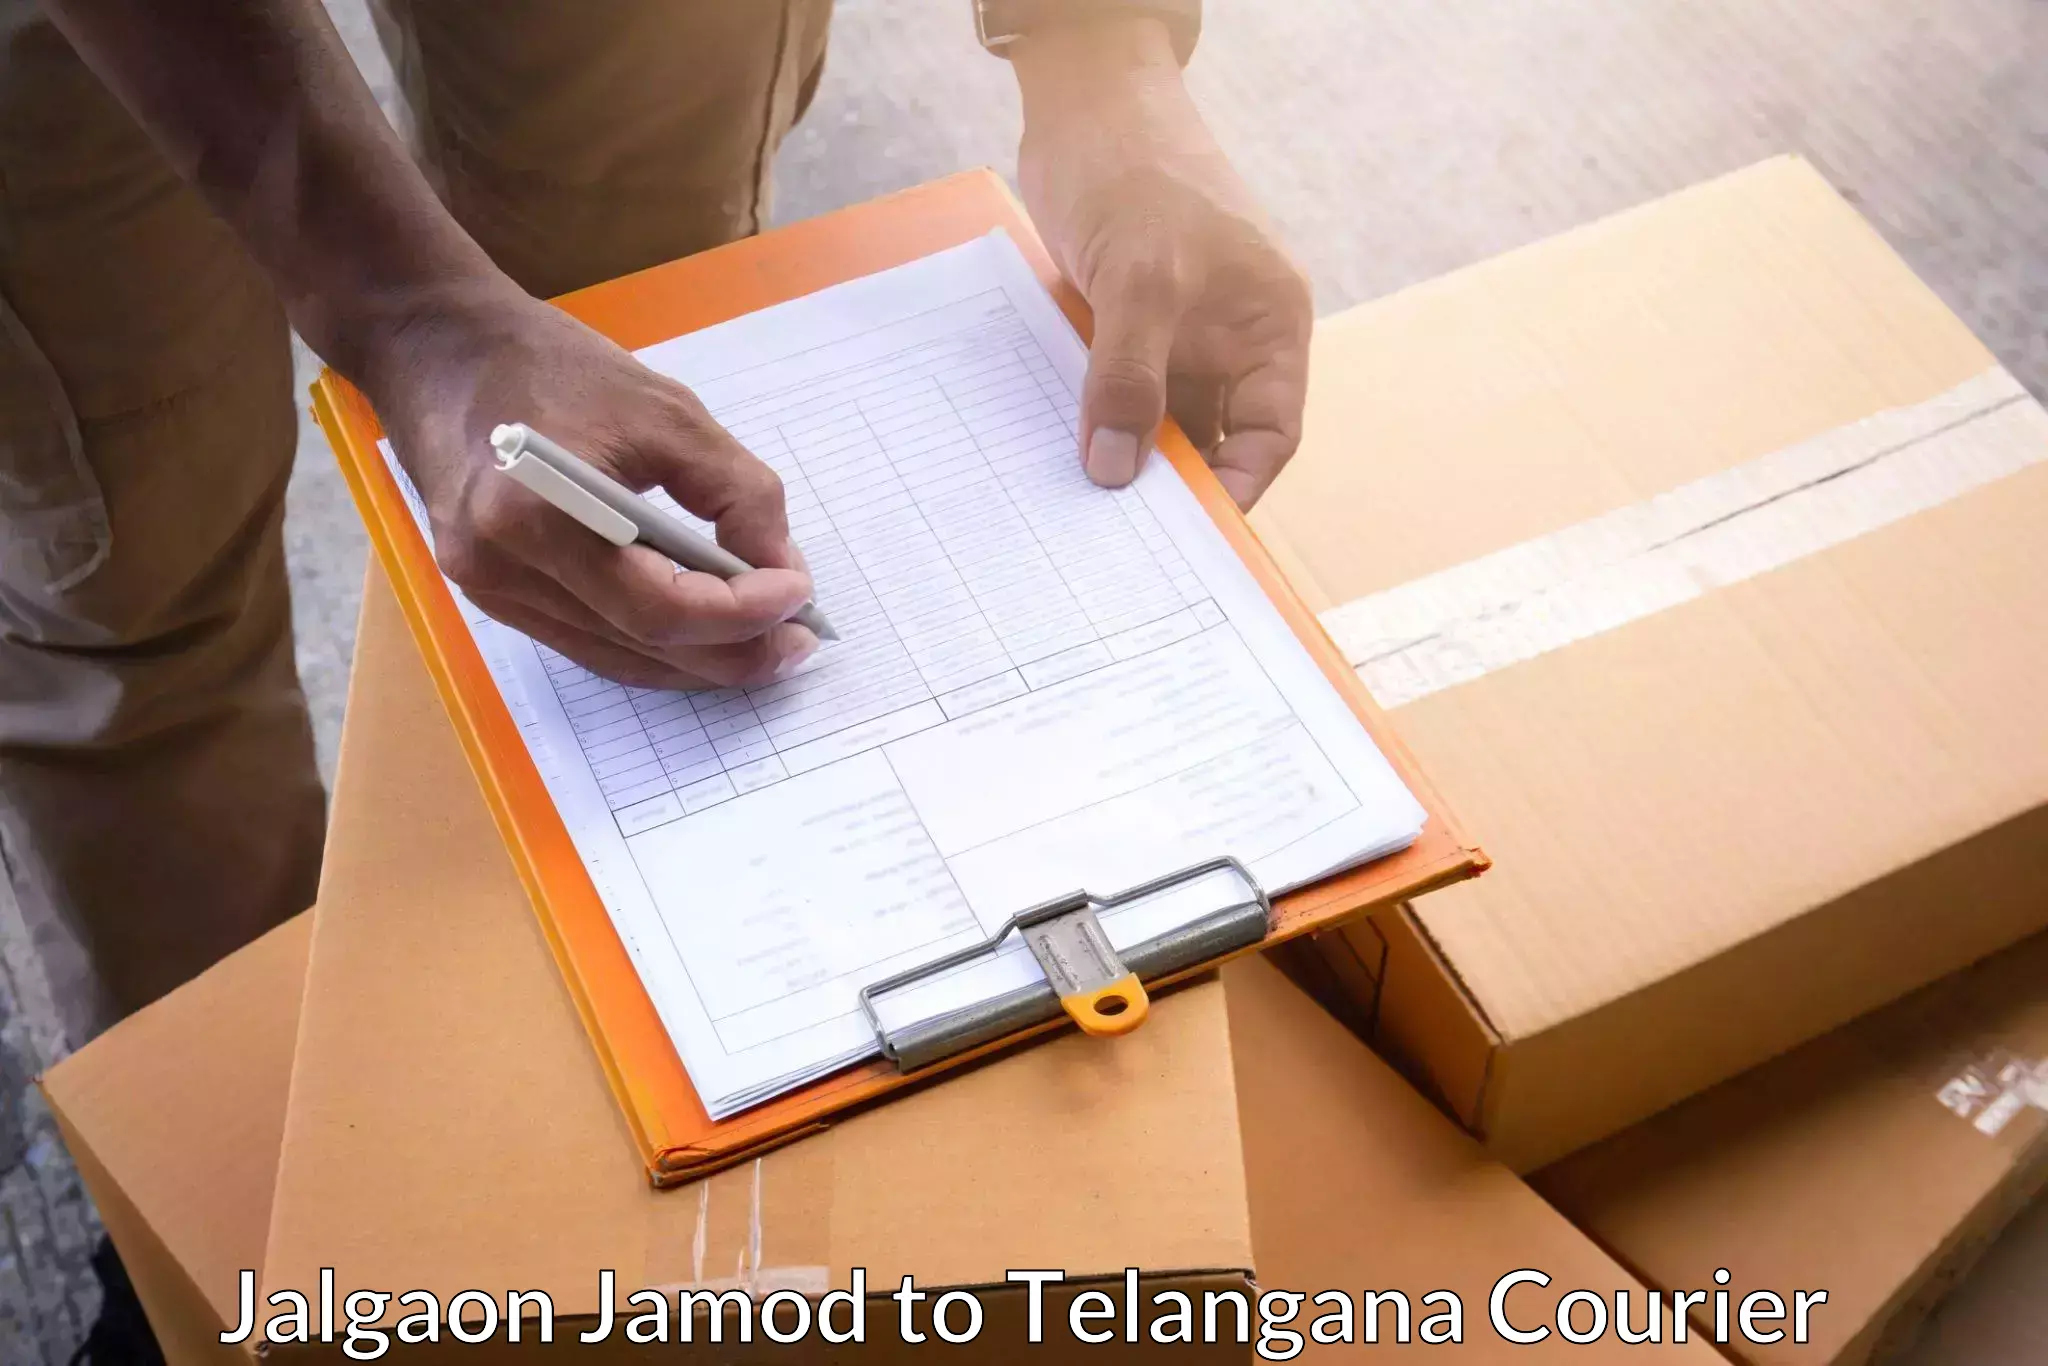 Expedited shipping methods Jalgaon Jamod to Sadashivpet